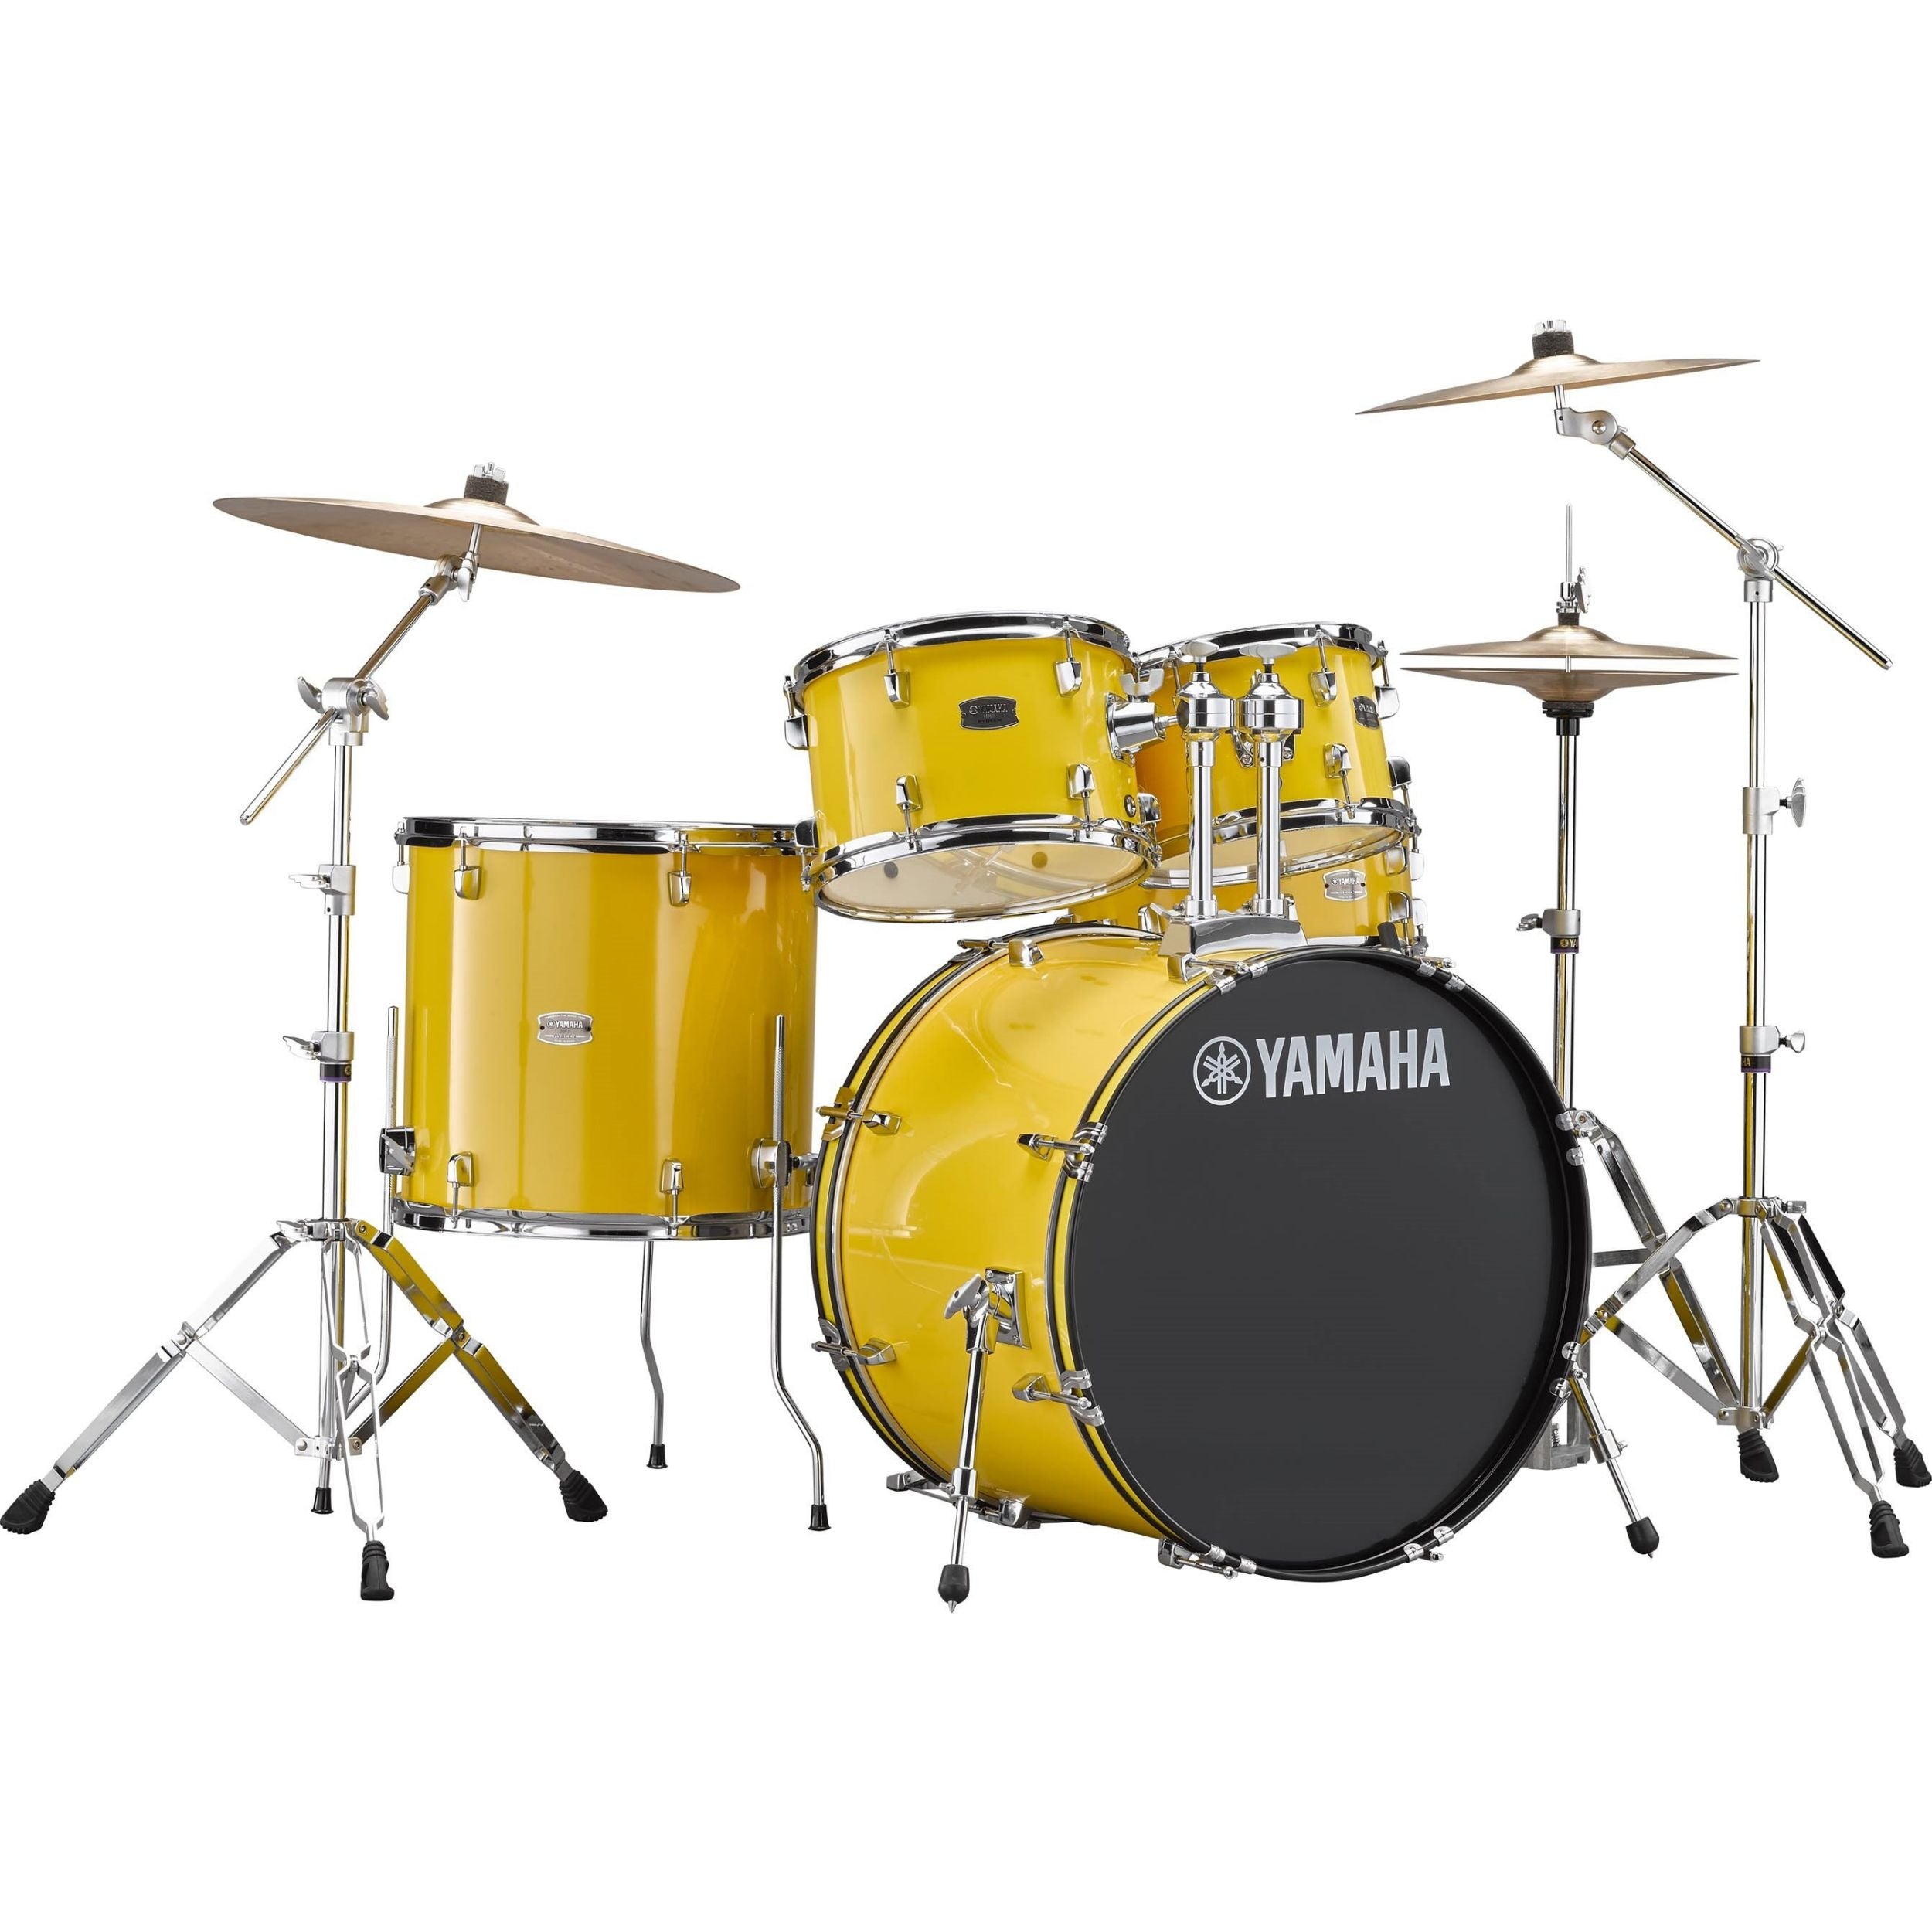 Yamaha RDP2F5YL Rydeen Euro Drum Kit, Mellow Yellow with Free Yamaha Stool & Sticks